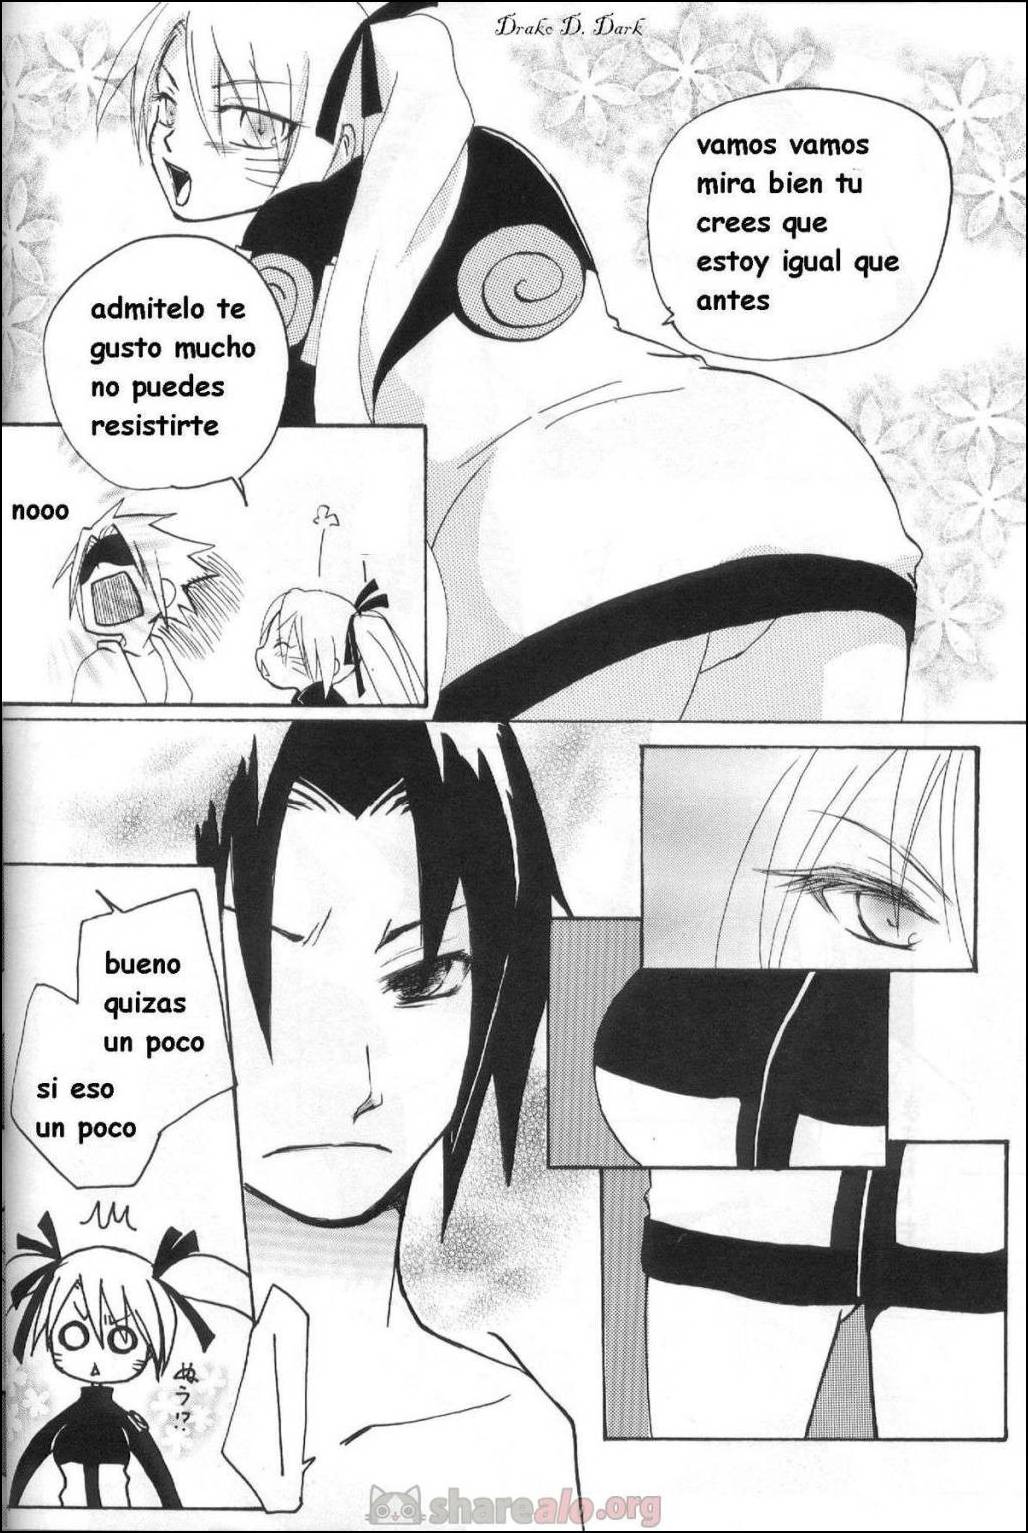 La Persuación de Naruto (Naruko y Sasuke Uchiha Follando) - 5 - Comics Porno - Hentai Manga - Cartoon XXX